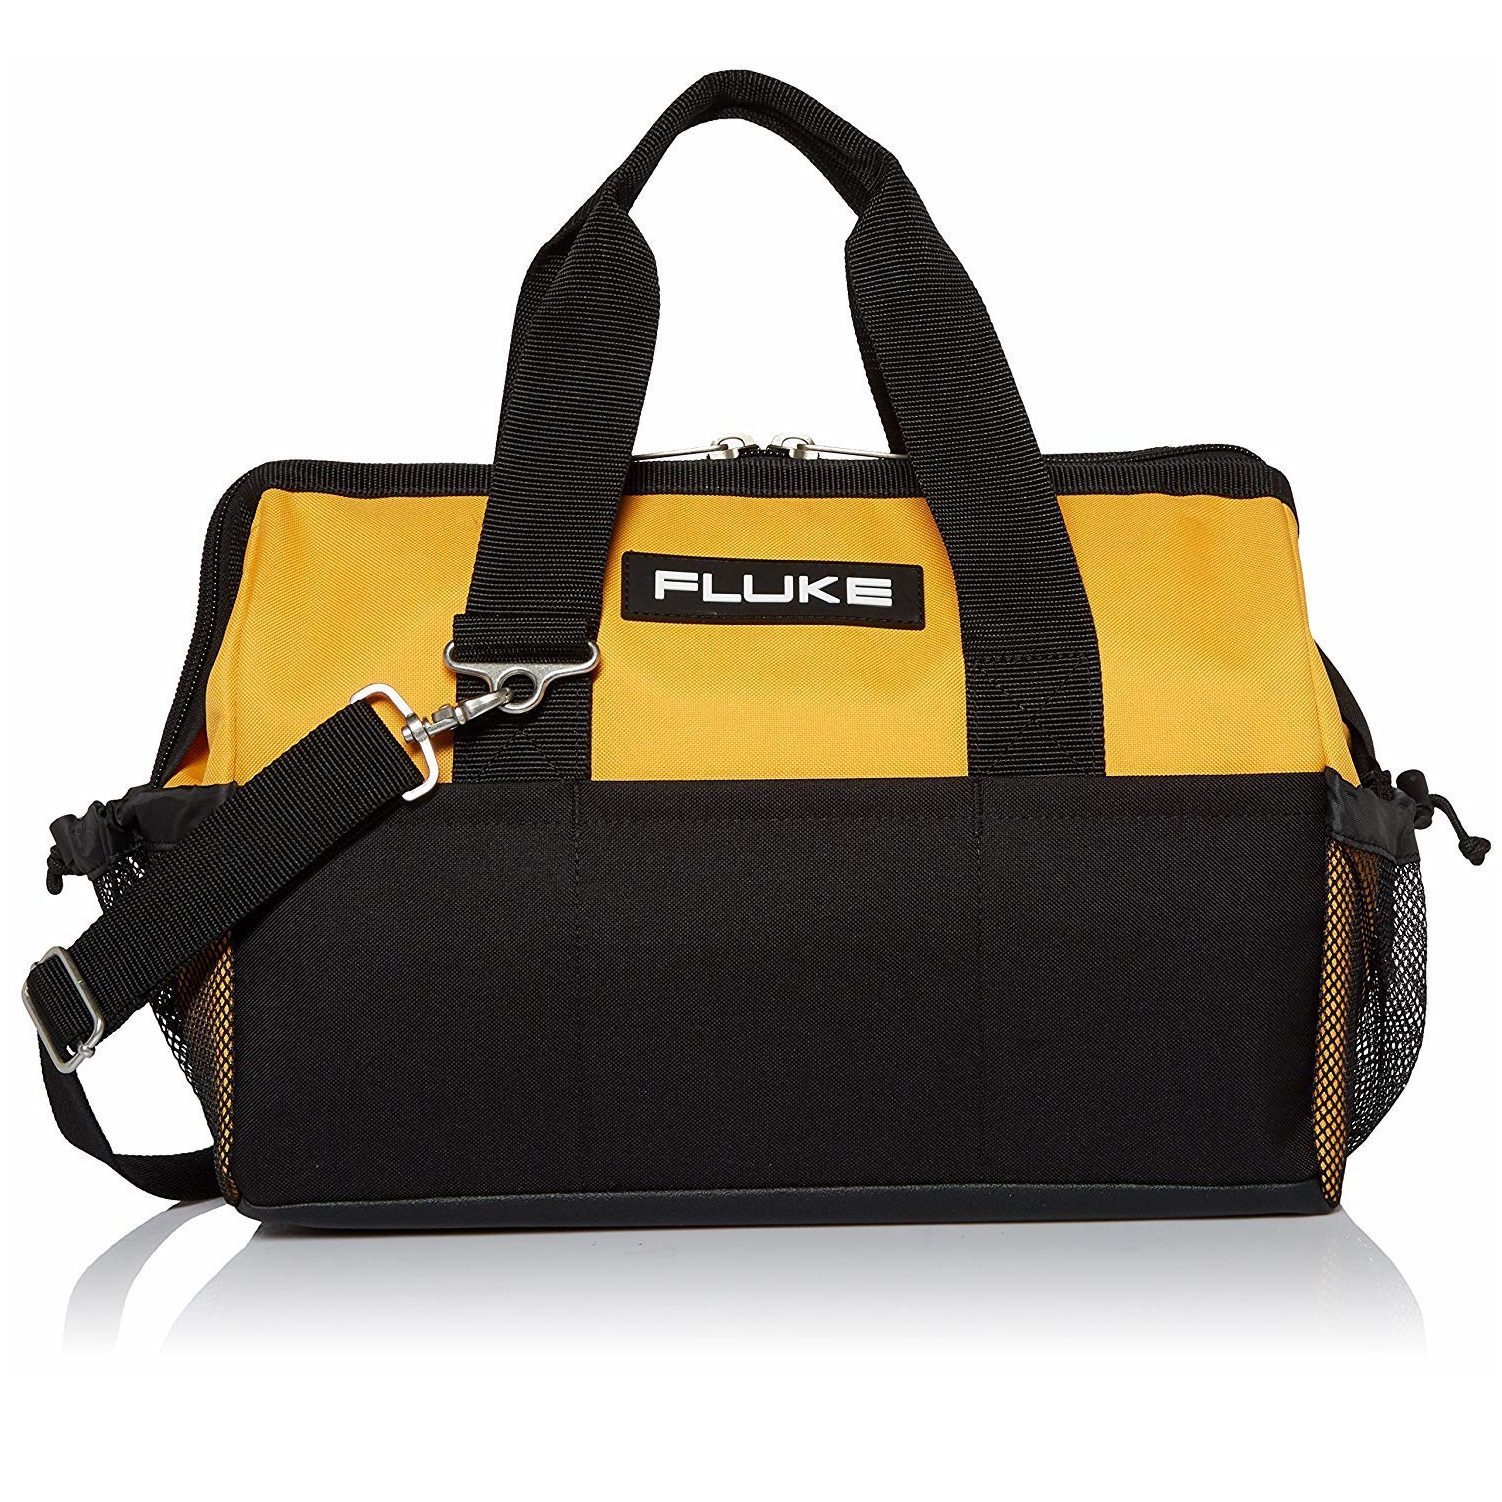 Fluke C550 Premium Tool Bag with Reinforced Frame 